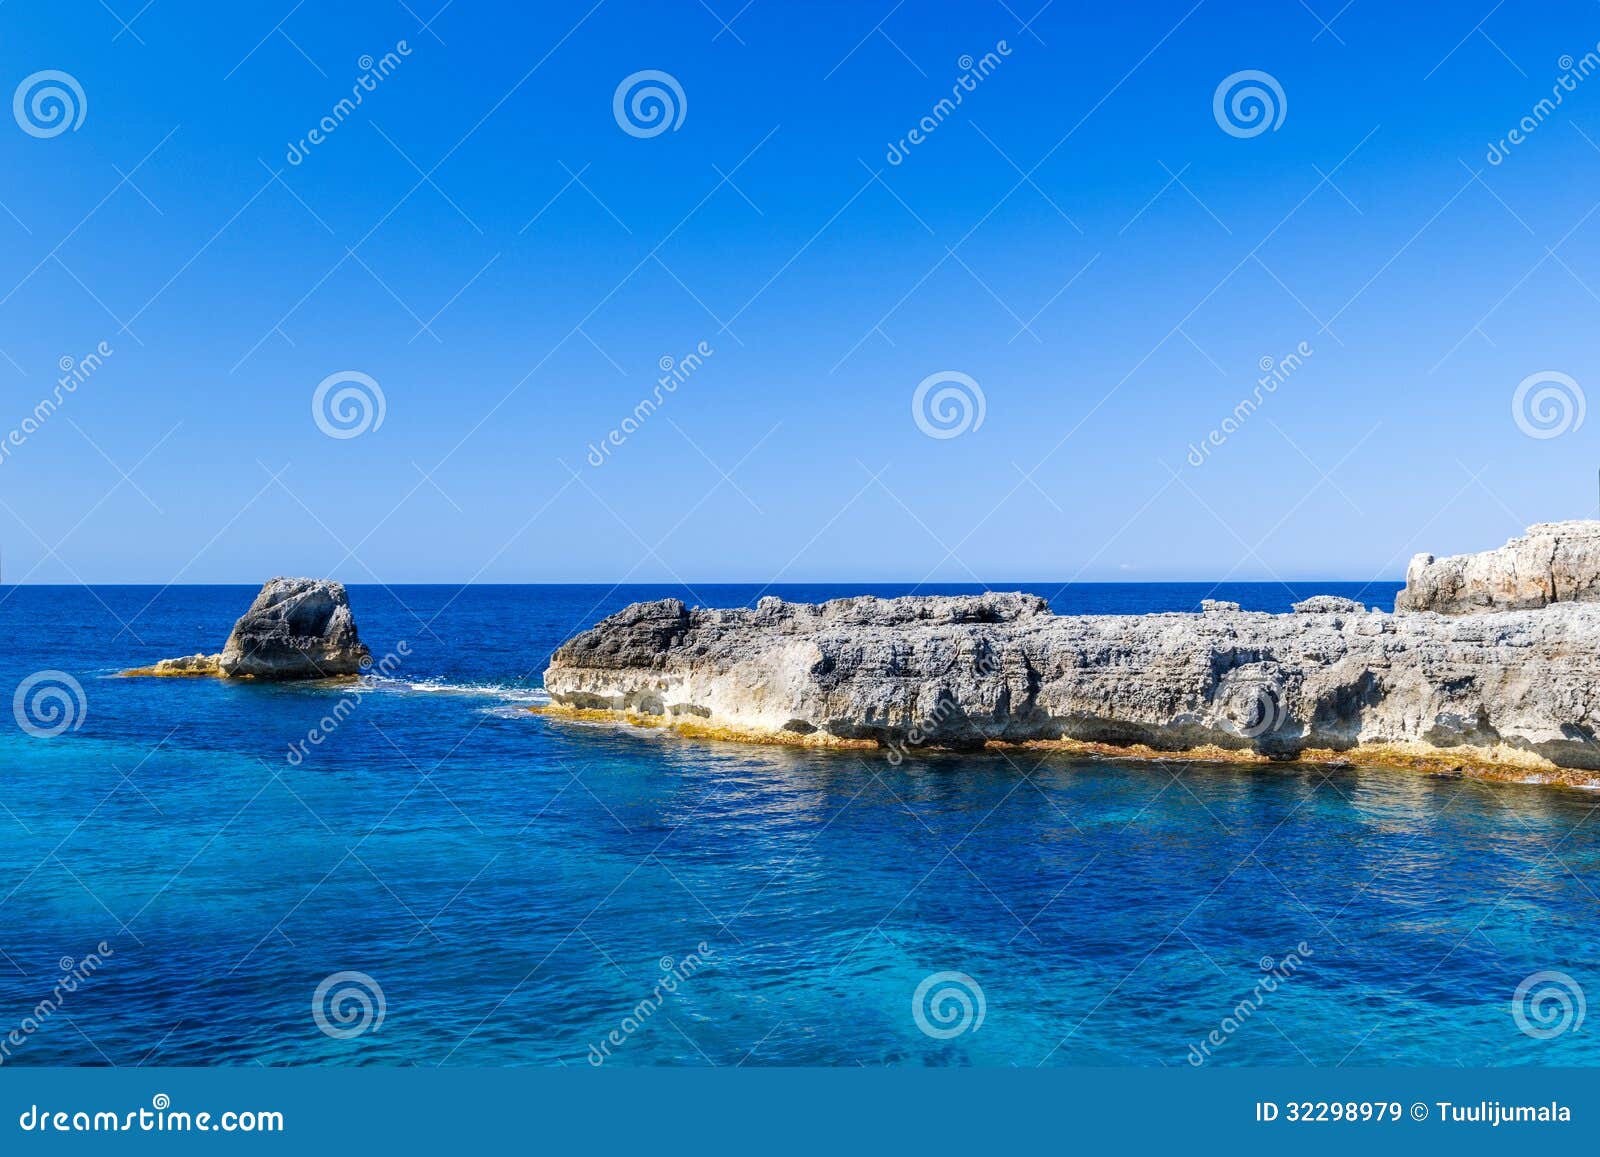 Morze Śródziemnomorskie sceneria z falezami Menorca wyspa, Hiszpania.